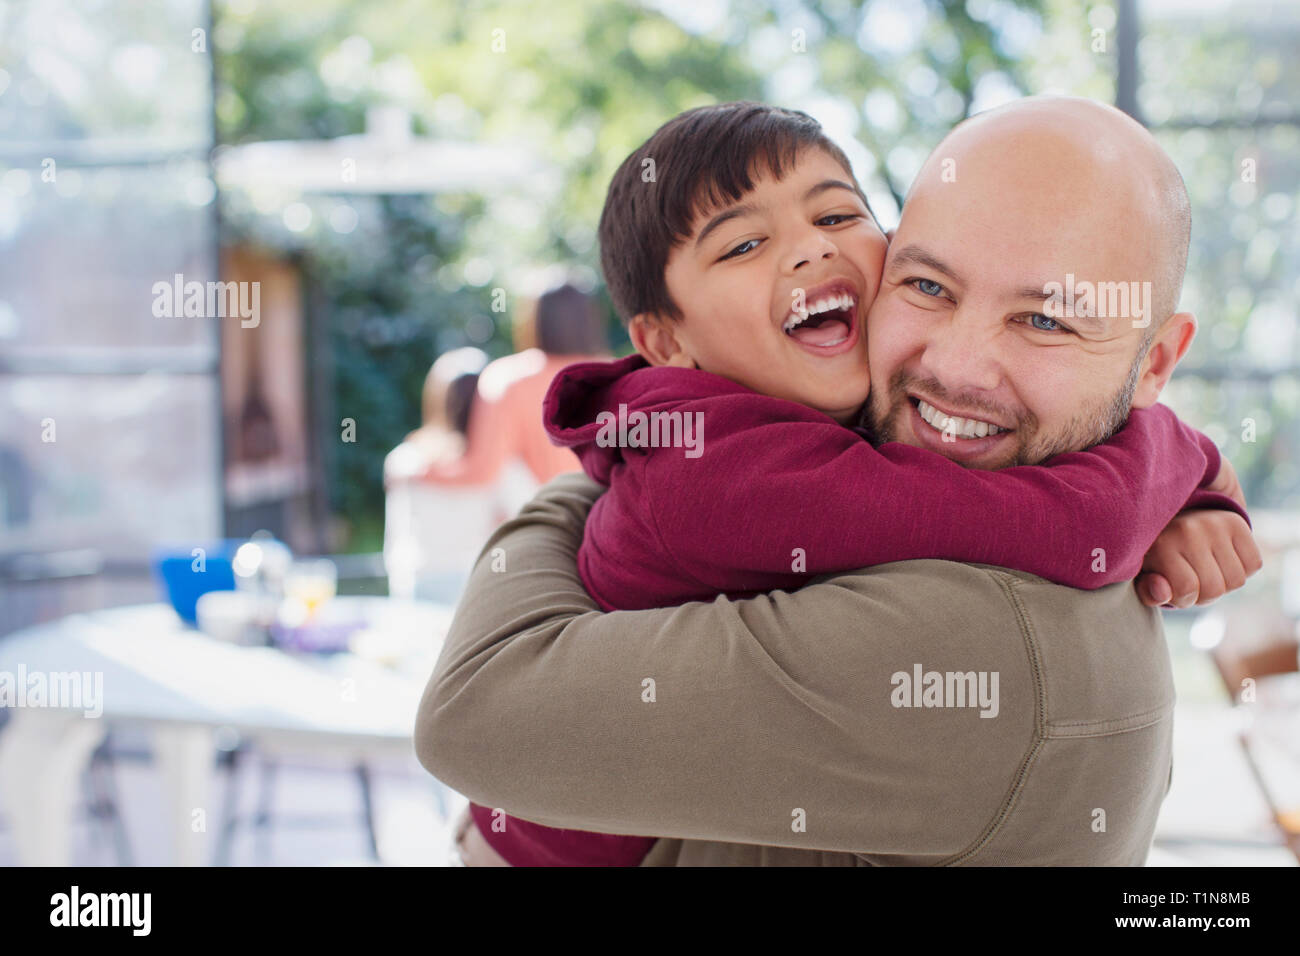 Heureux, père et fils exubérante hugging Banque D'Images